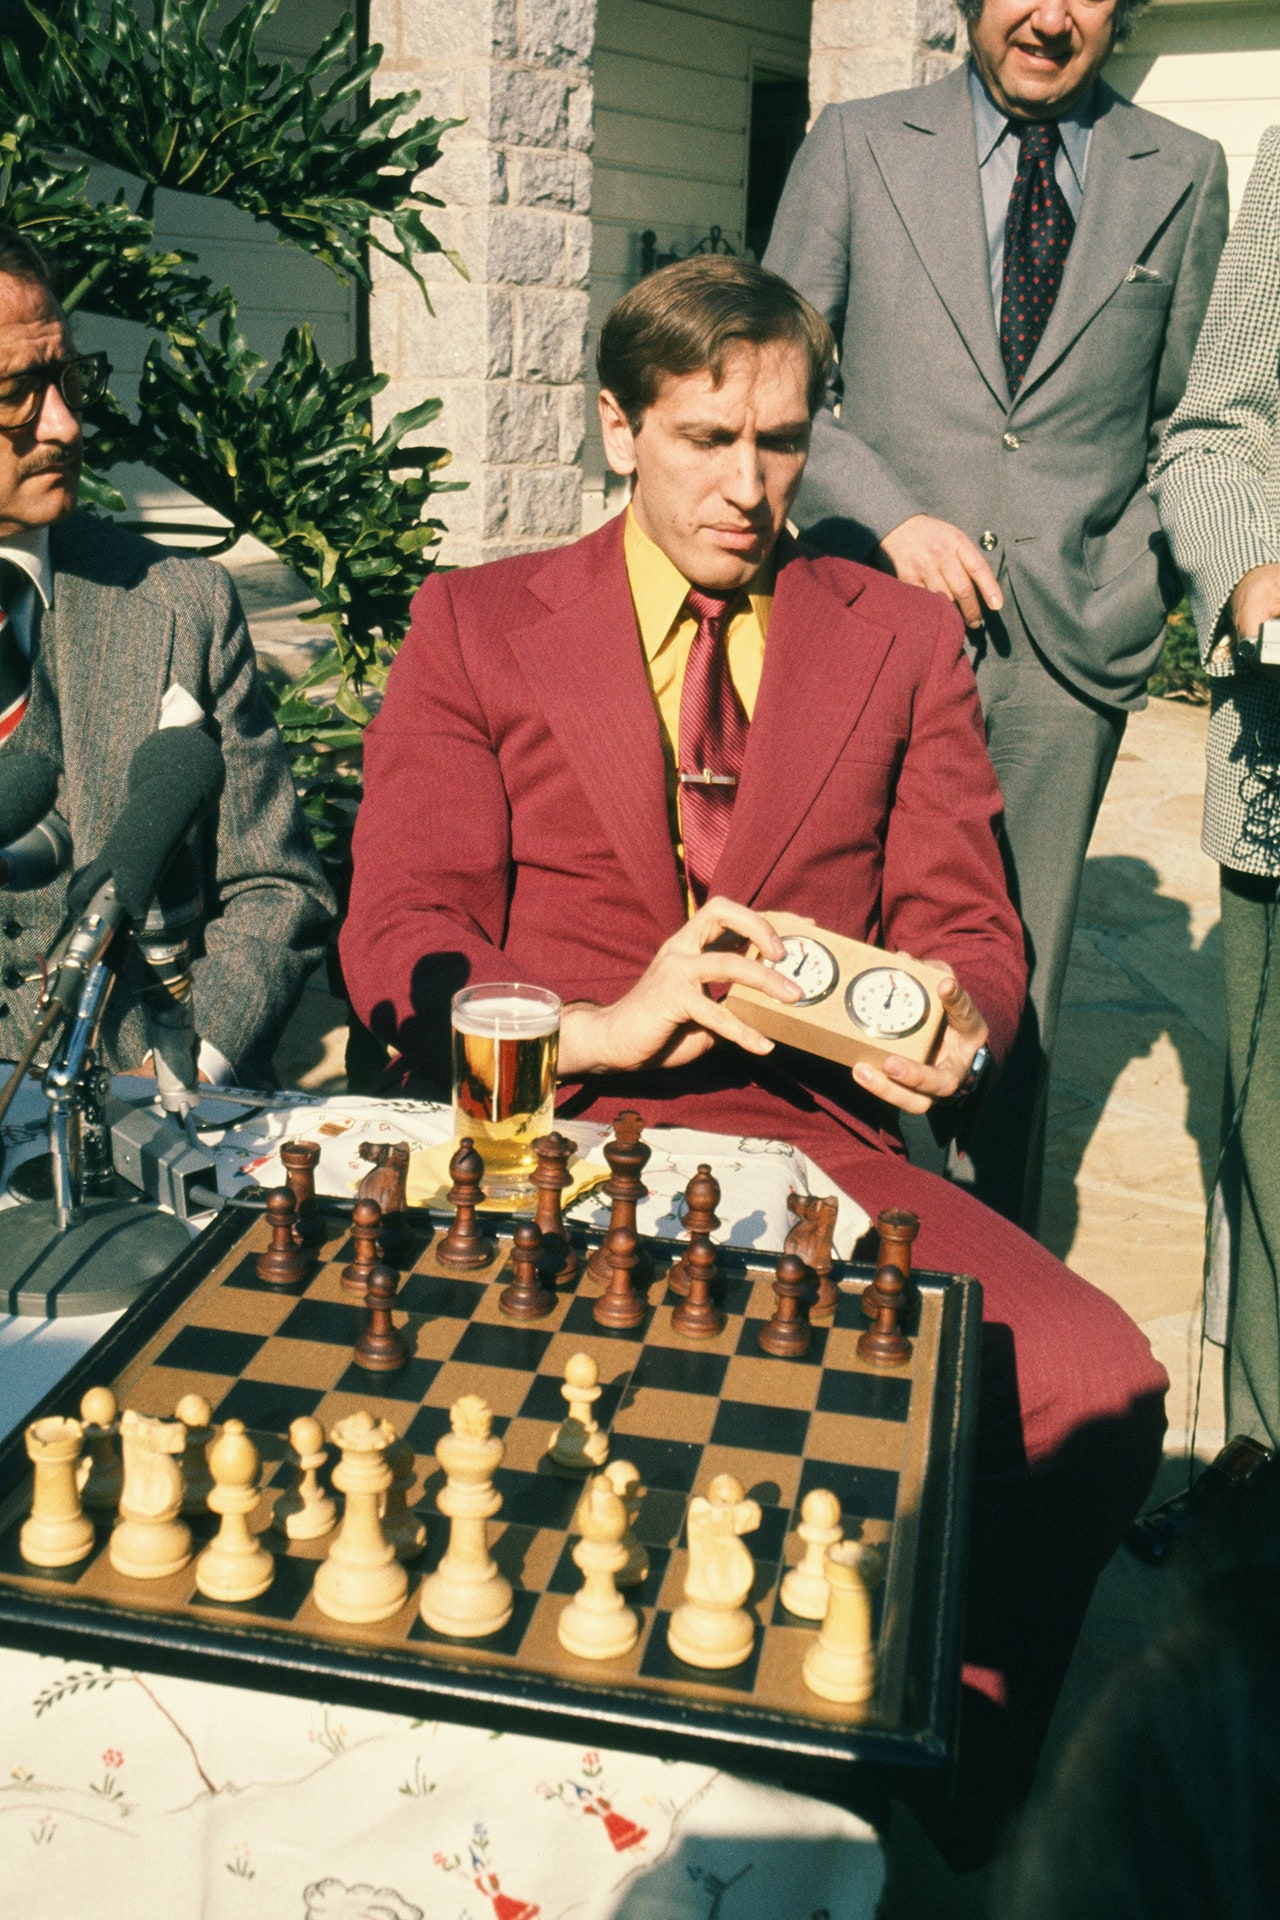 The Queen's Gambit: meet the real Beth Harmon Bobby Fischer